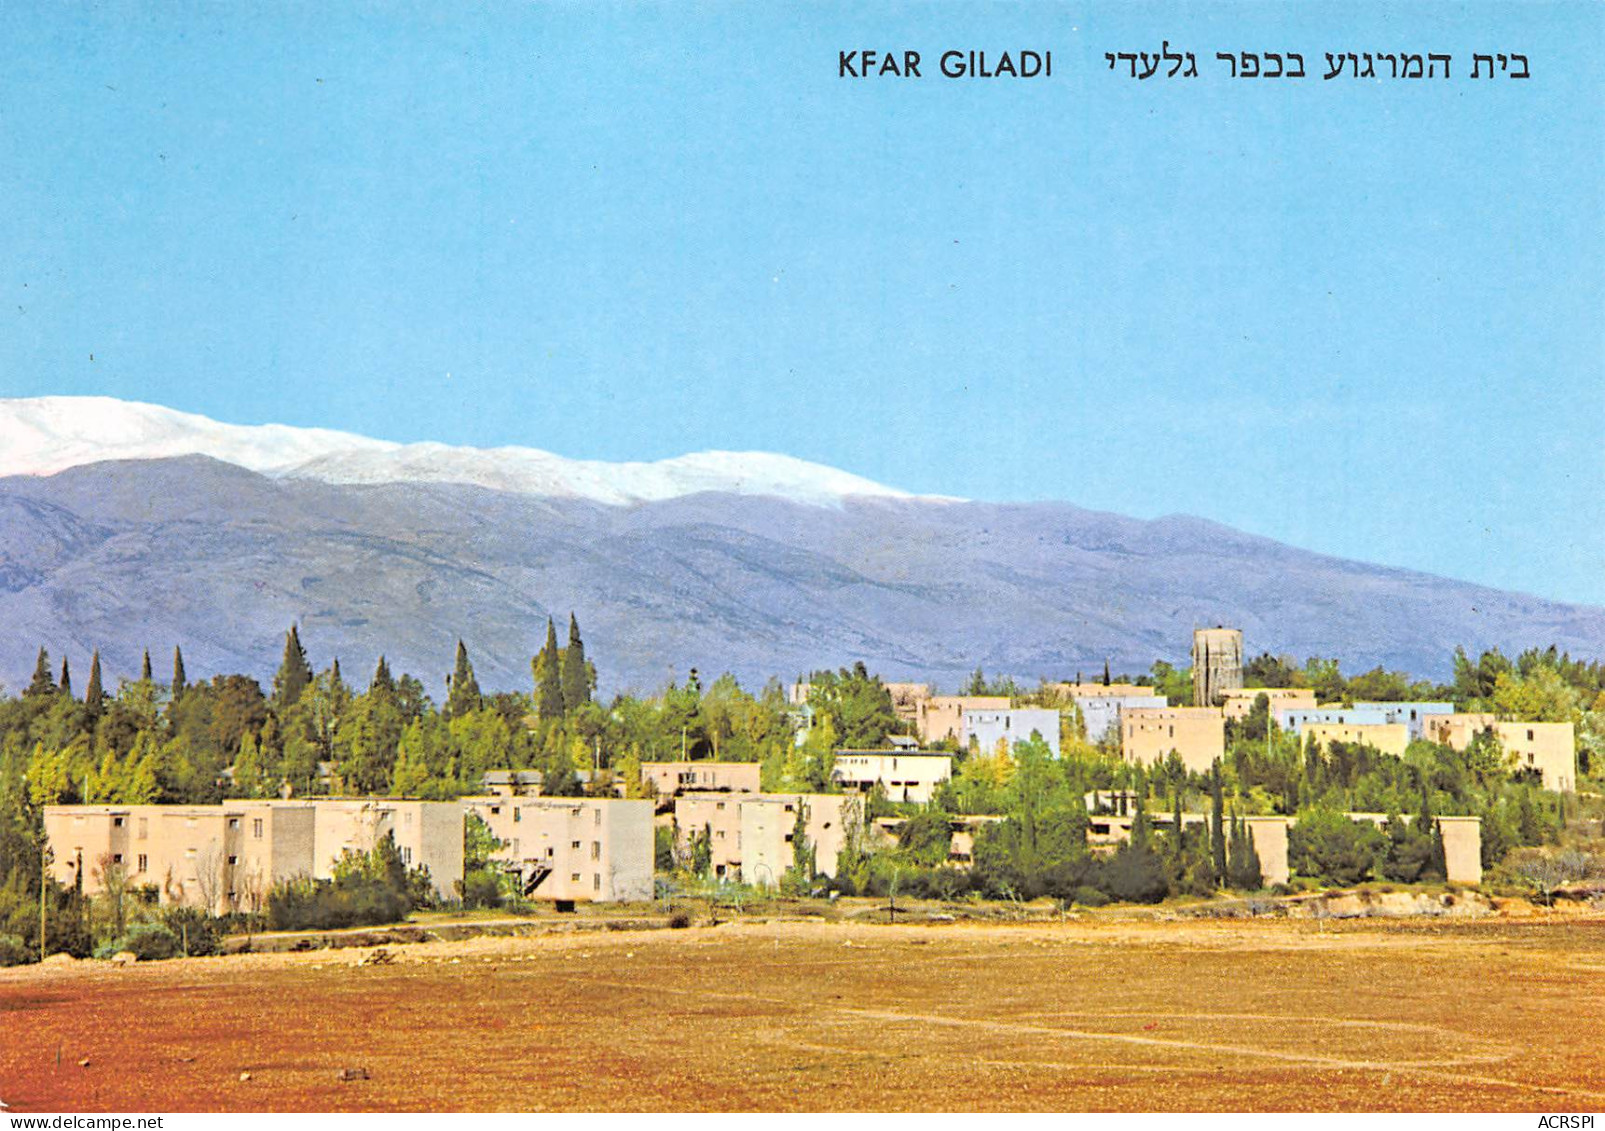  Israël ISRAEL  Rest House Kfar Giladi Galilee  N°27 \ MK3030    כפר גלעדי. ישר�?ל - Israel